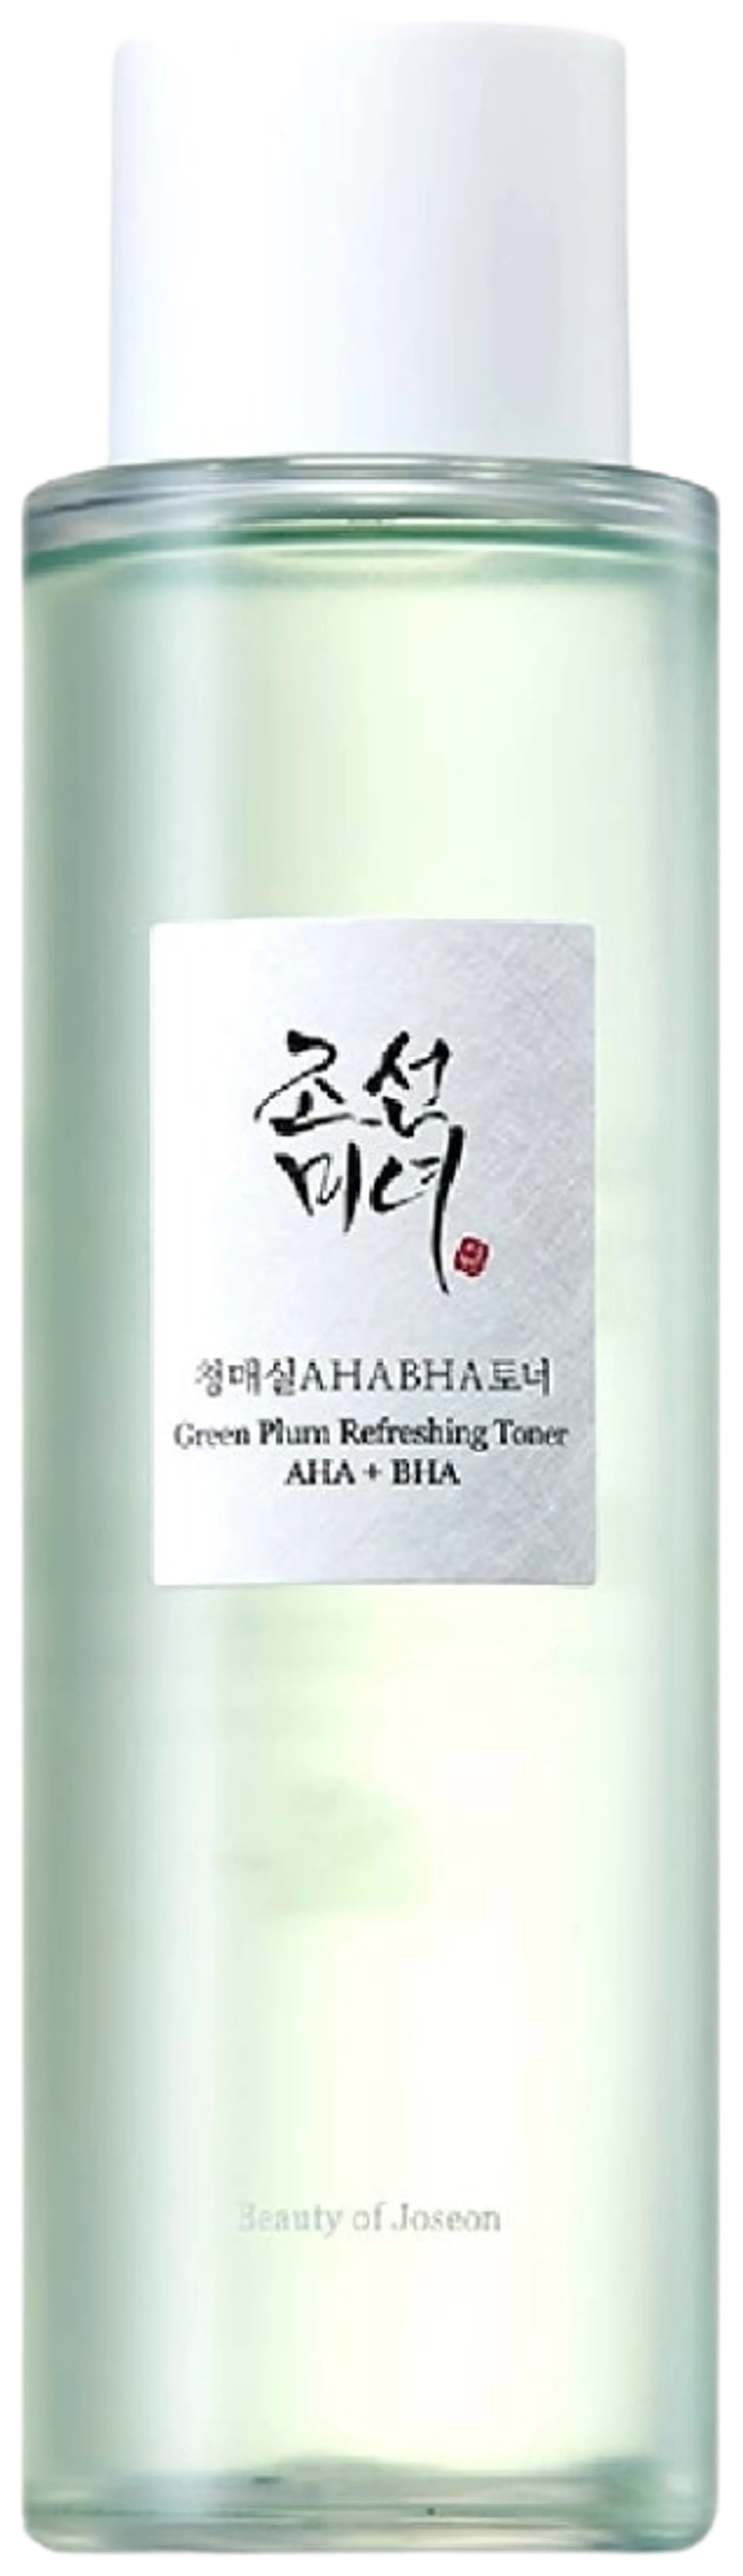 Beauty of Joseon Green Plum Refreshing Toner : AHA+BHA kasvovesi 150 ml